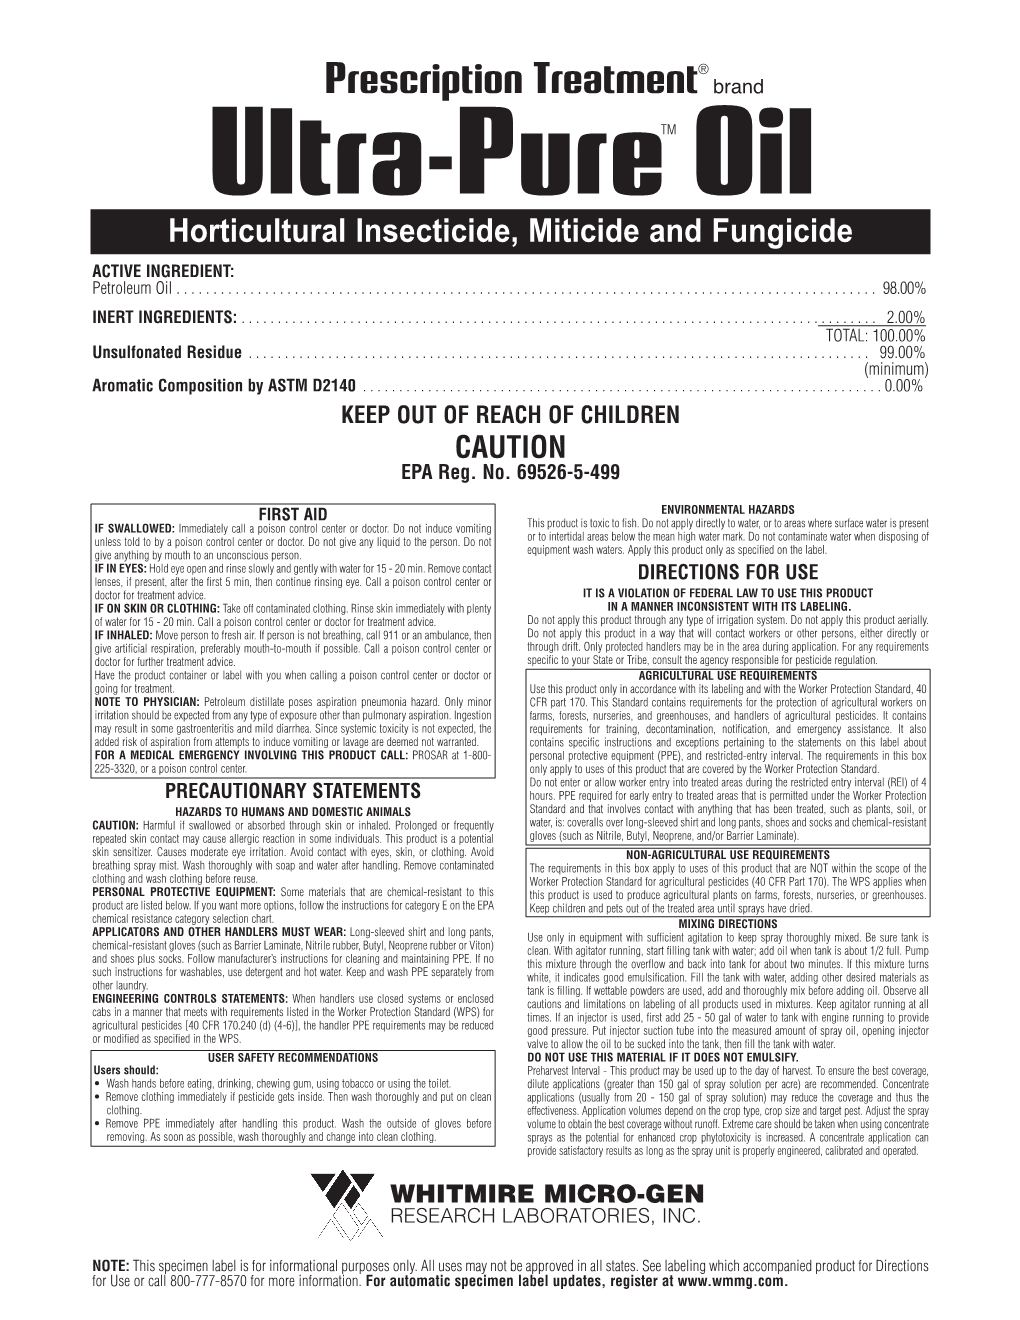 Ultra-Pure Oil Label